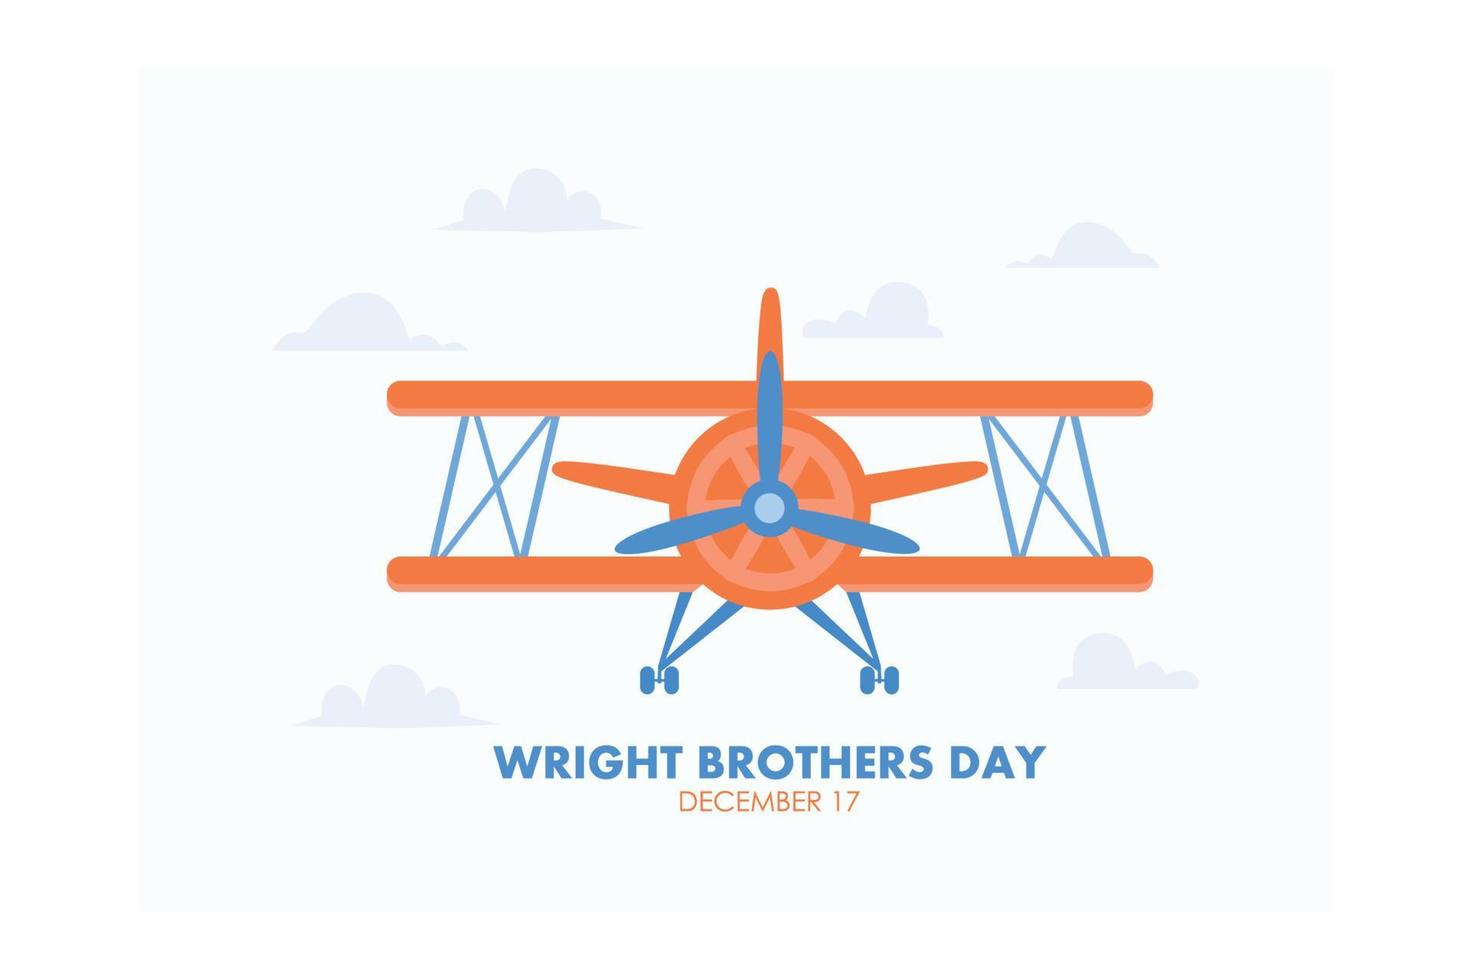 ilustración vectorial sobre el tema del día de los hermanos wright que se celebra cada año el 17 de diciembre, ilustración moderna vectorial plana vector